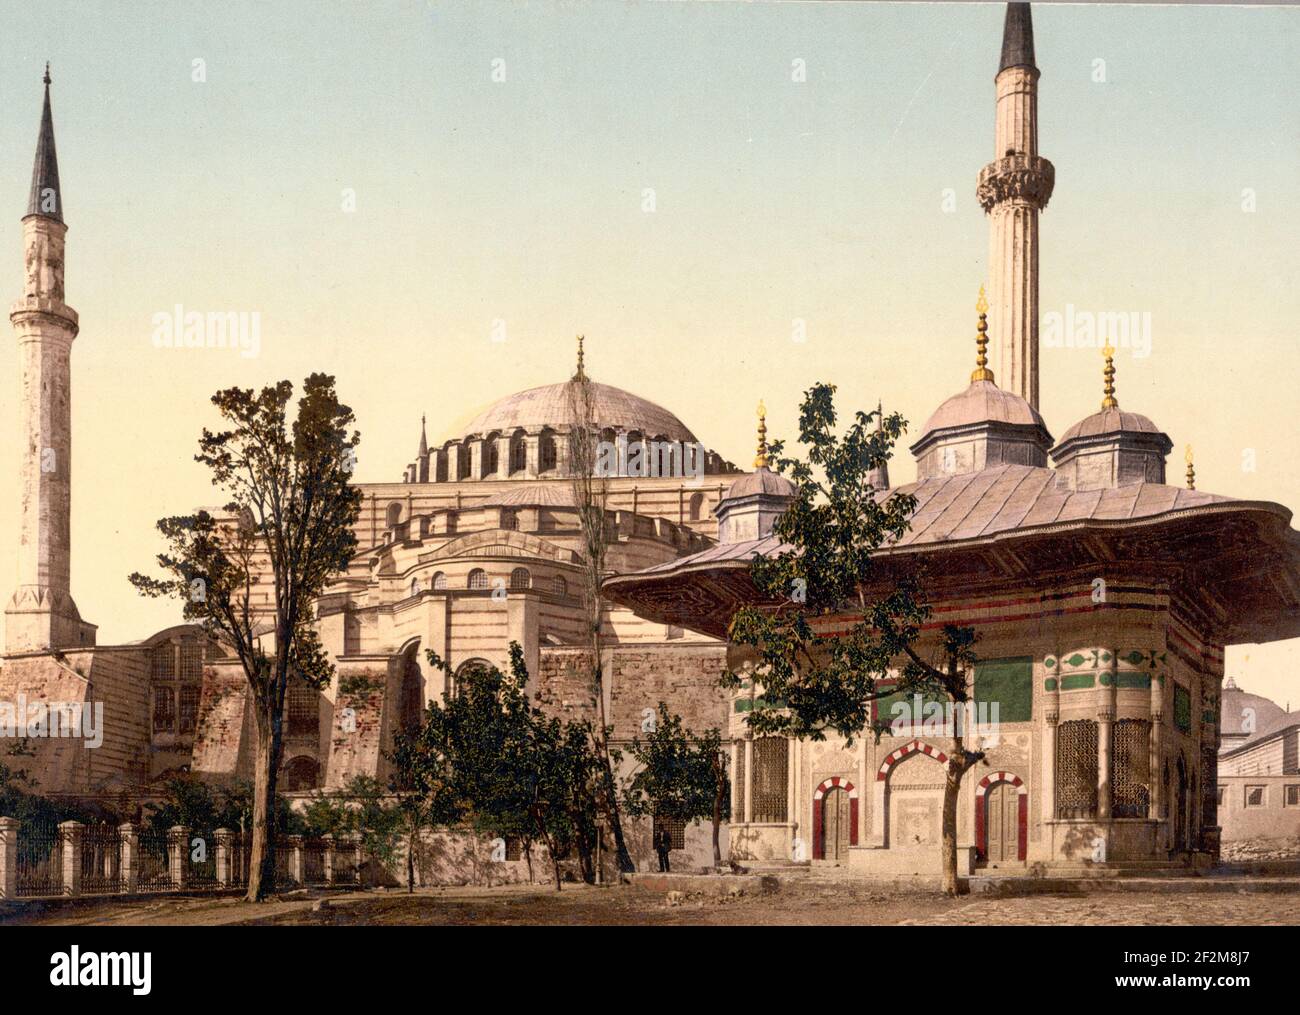 Mosquée de Sainte-Sophie et fontaine Ahmed III, Constantinople, Turquie, vers 1900 Banque D'Images